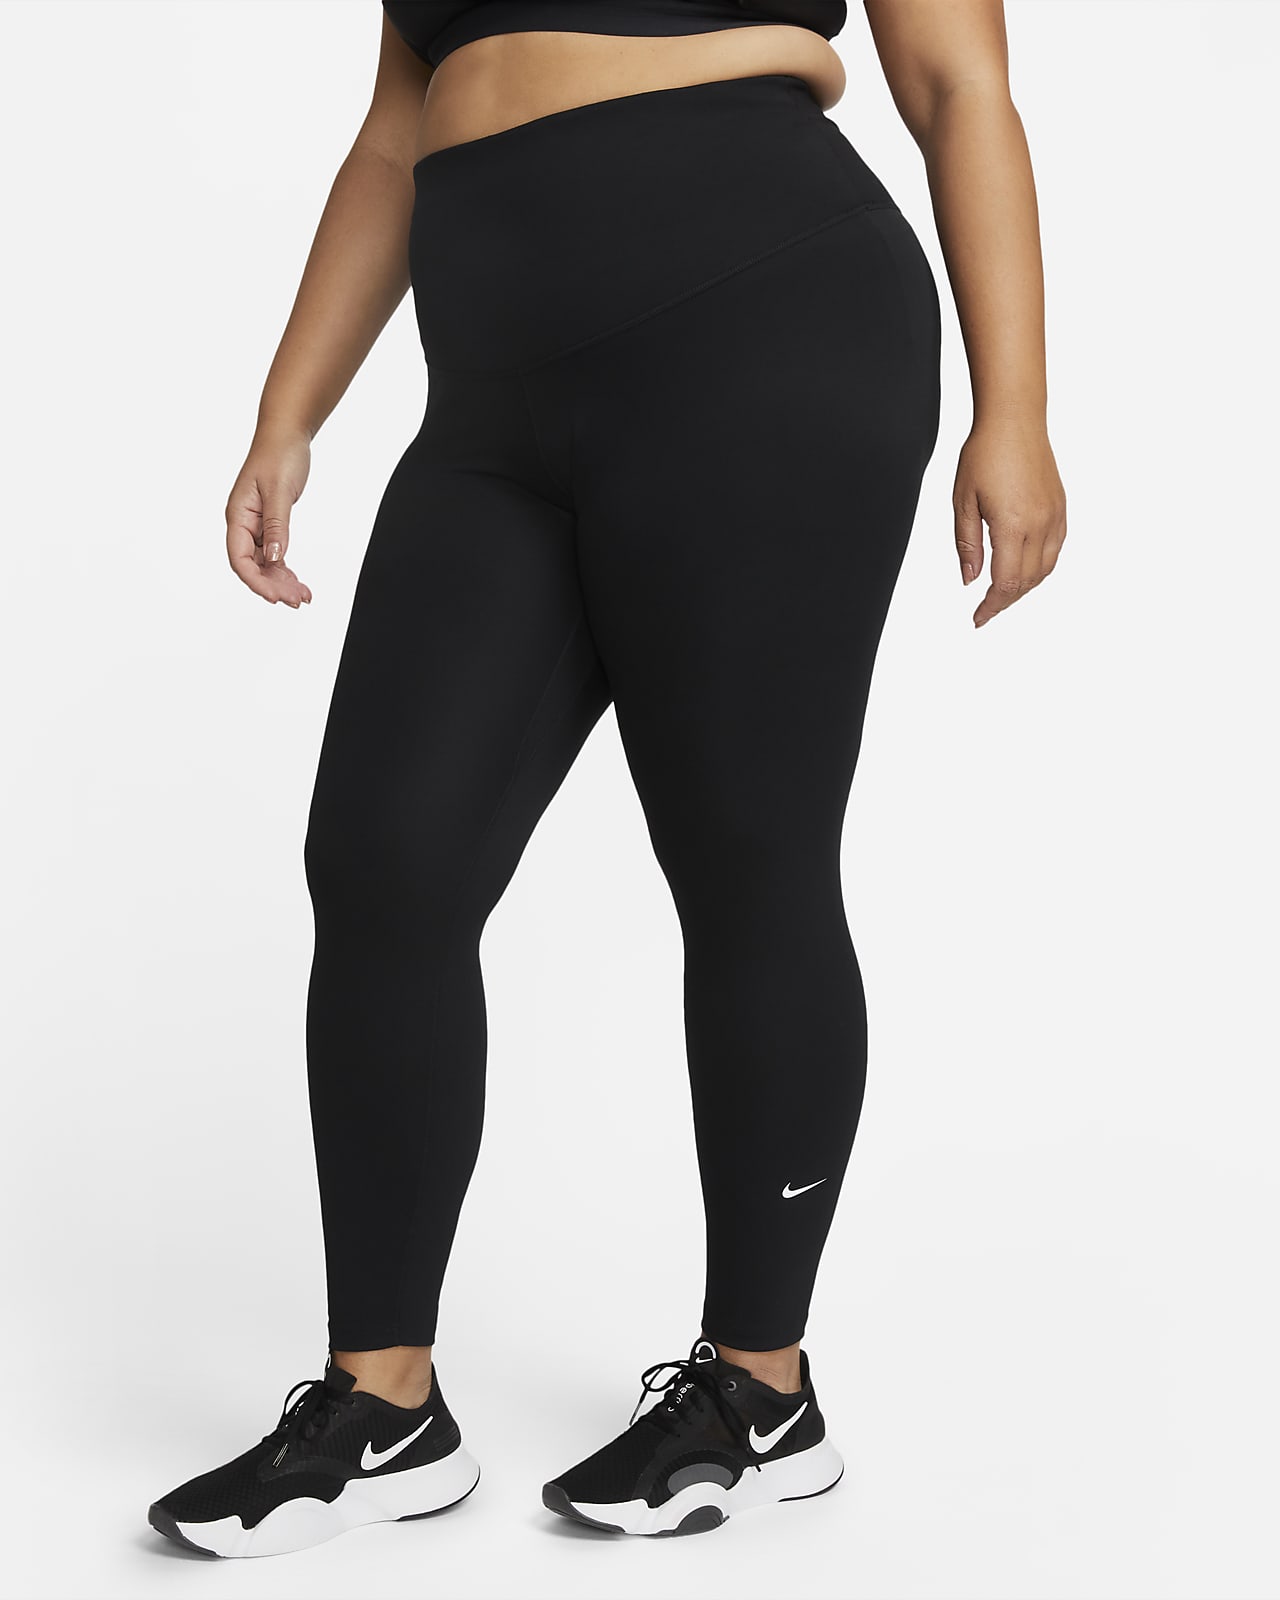 Women's Leggings & Tights. Nike HR